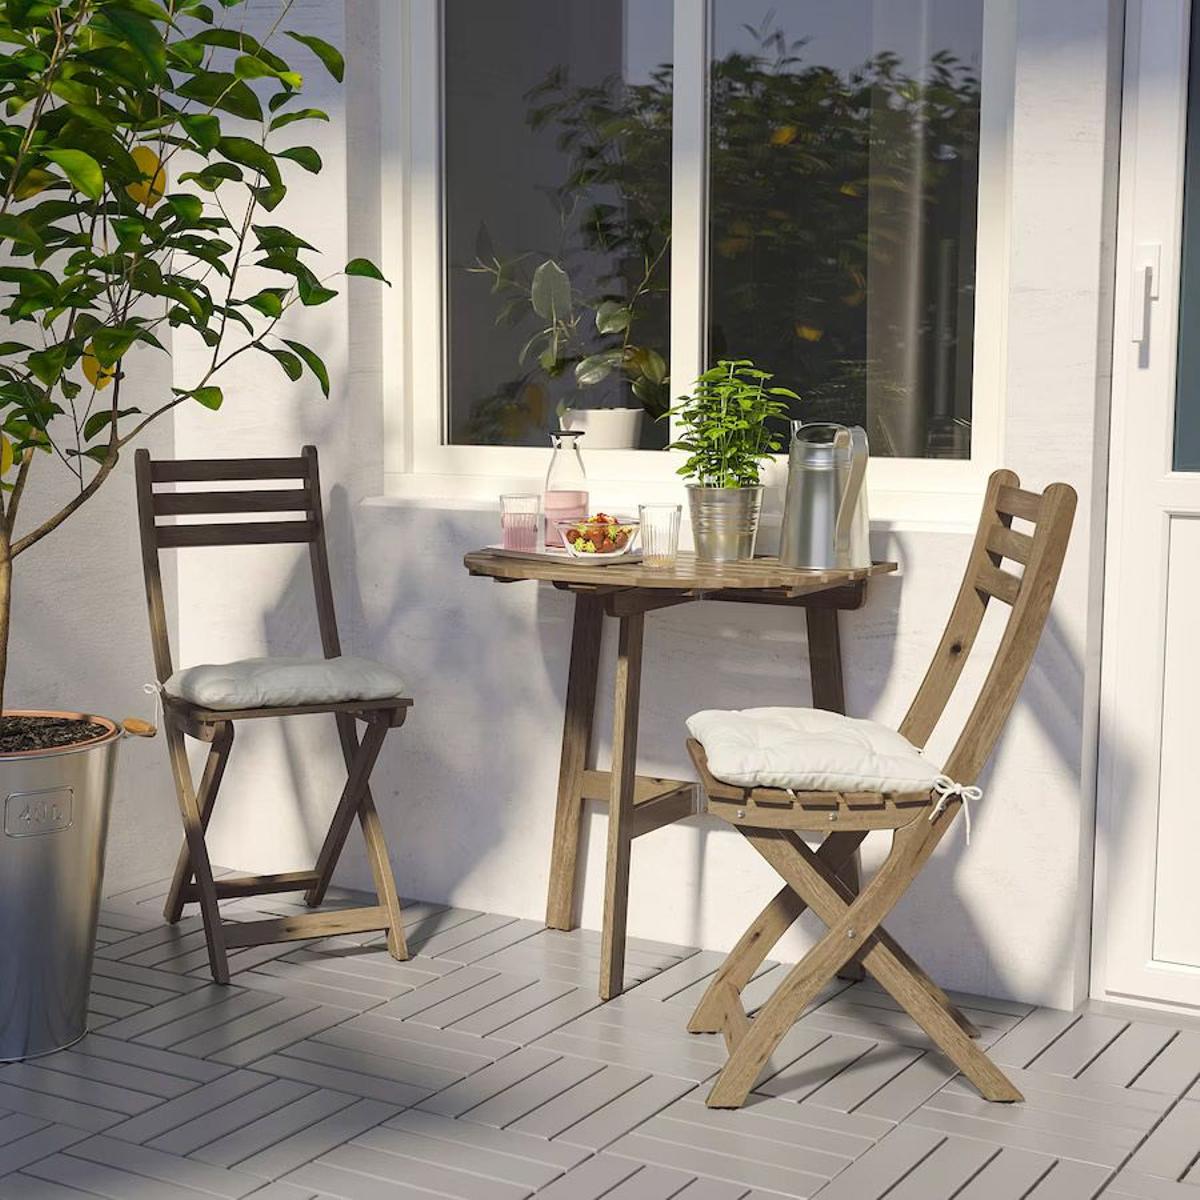 Federal Comida sana detalles Nuestras 10 mesas y sillas favoritos para balcones y terrazas pequeñas -  Woman